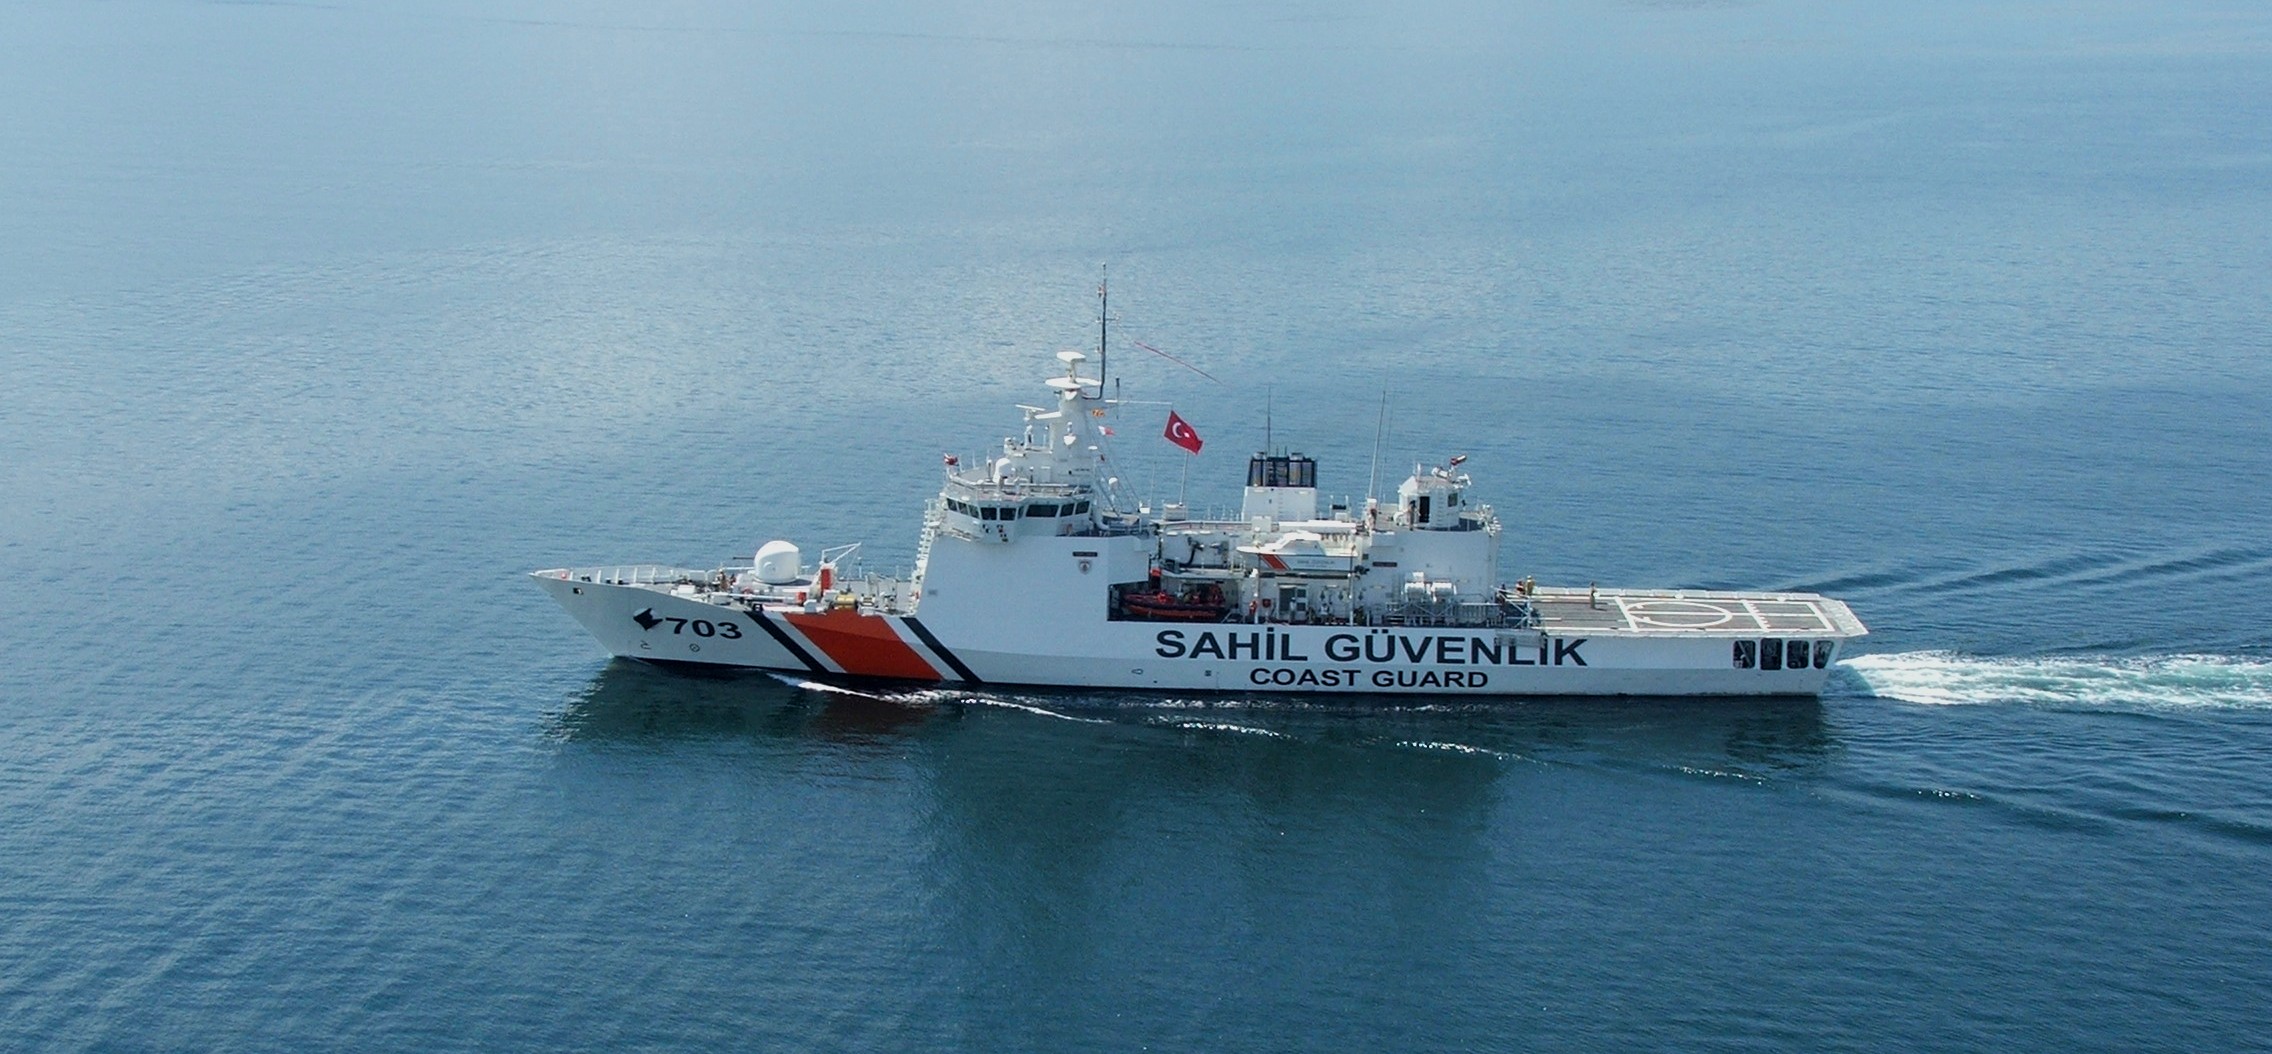 Αυτό είναι το τουρκικό πλοίο που εμβόλισε το «Γαύδος»: Περιπολικό μεγέθους κορβέτας!